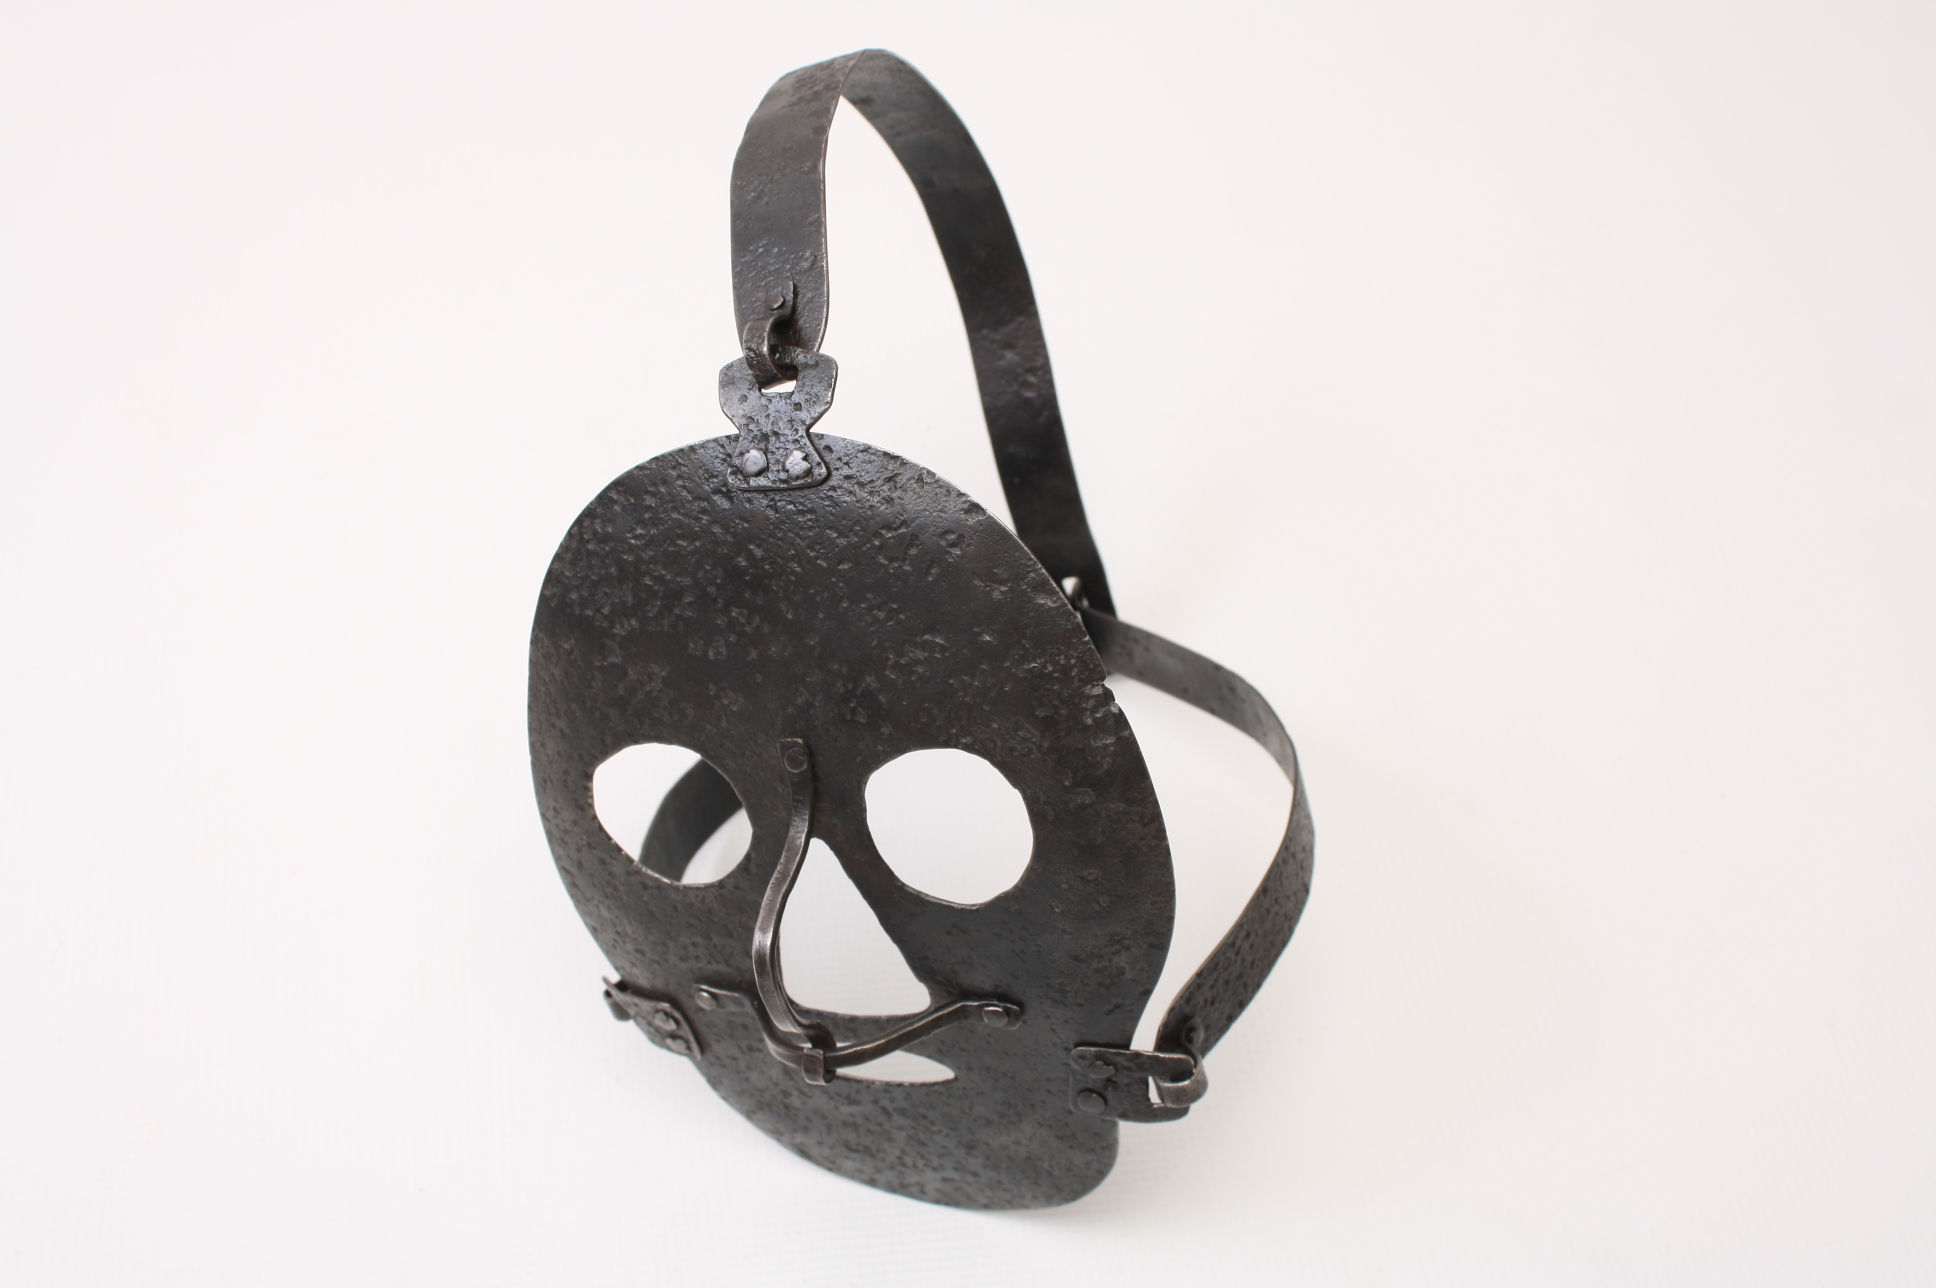 Уникальная железная "позорная" маска из испанской тюрьмы 16-17 вв., Испания.